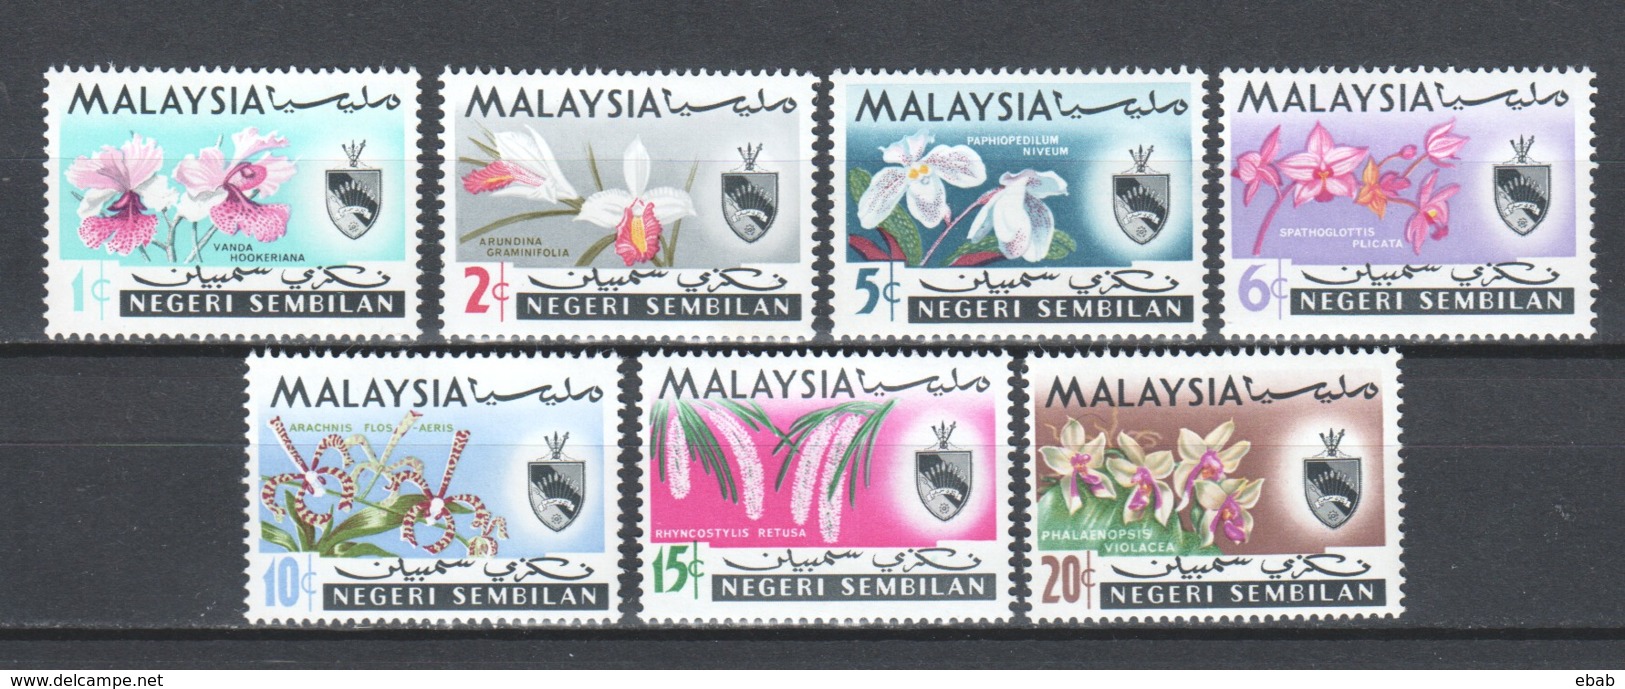 Malaysia Negeri Sembilan Mi 79-85 MNH FLOWERS ORCHIDS (A) - Malaysia (1964-...)